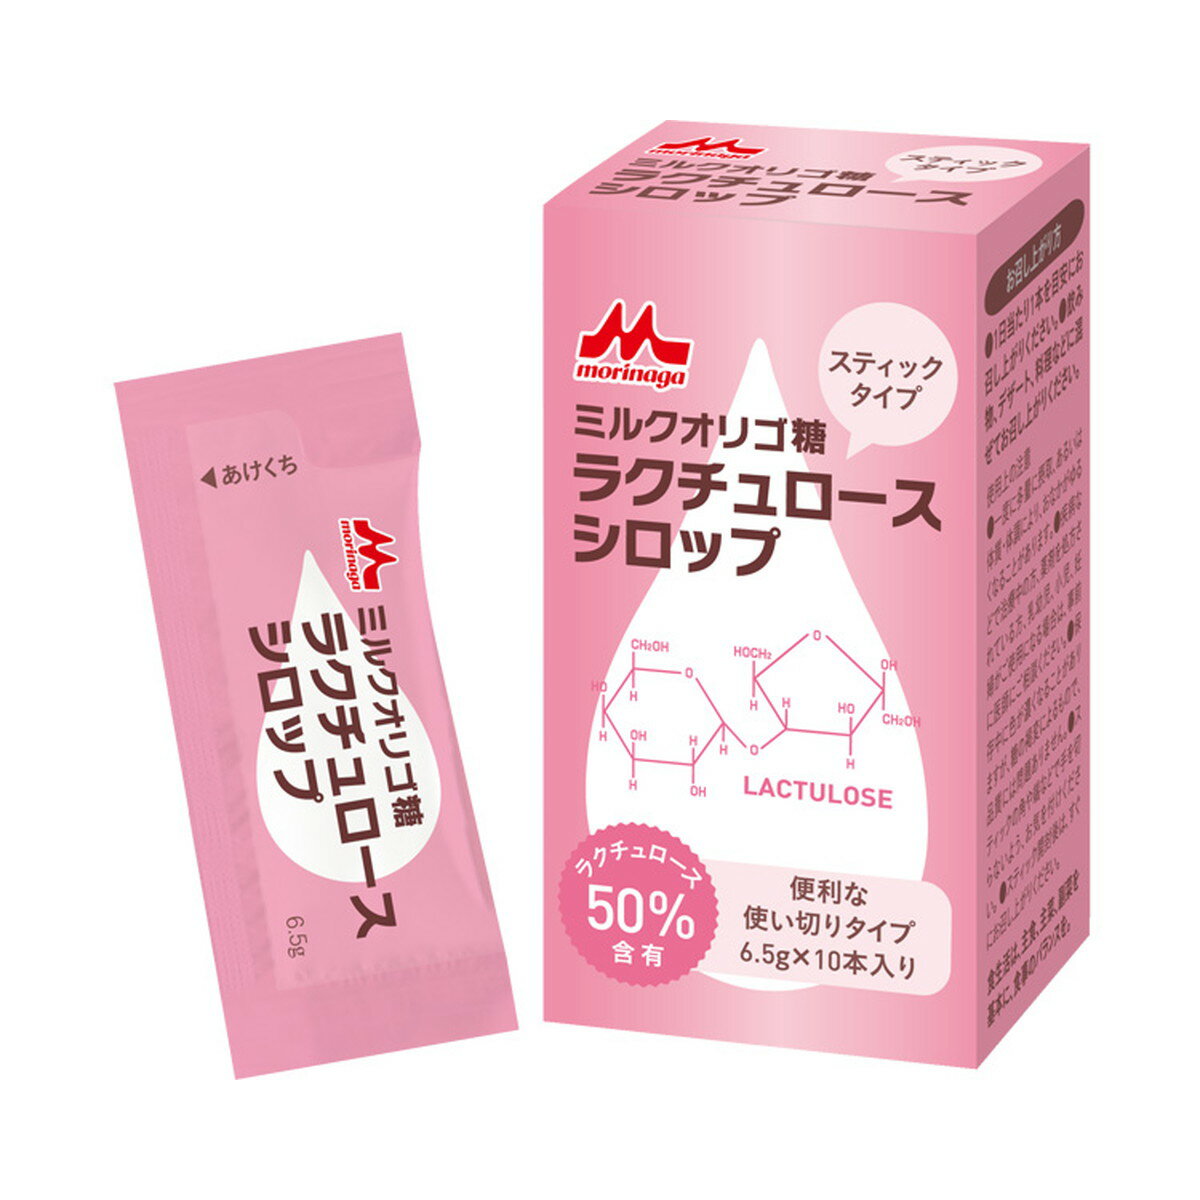 【送料込】森永乳業 クリニコ ミルクオリゴ糖 ラクチュロース シロップ 6.5g×10本入 1個